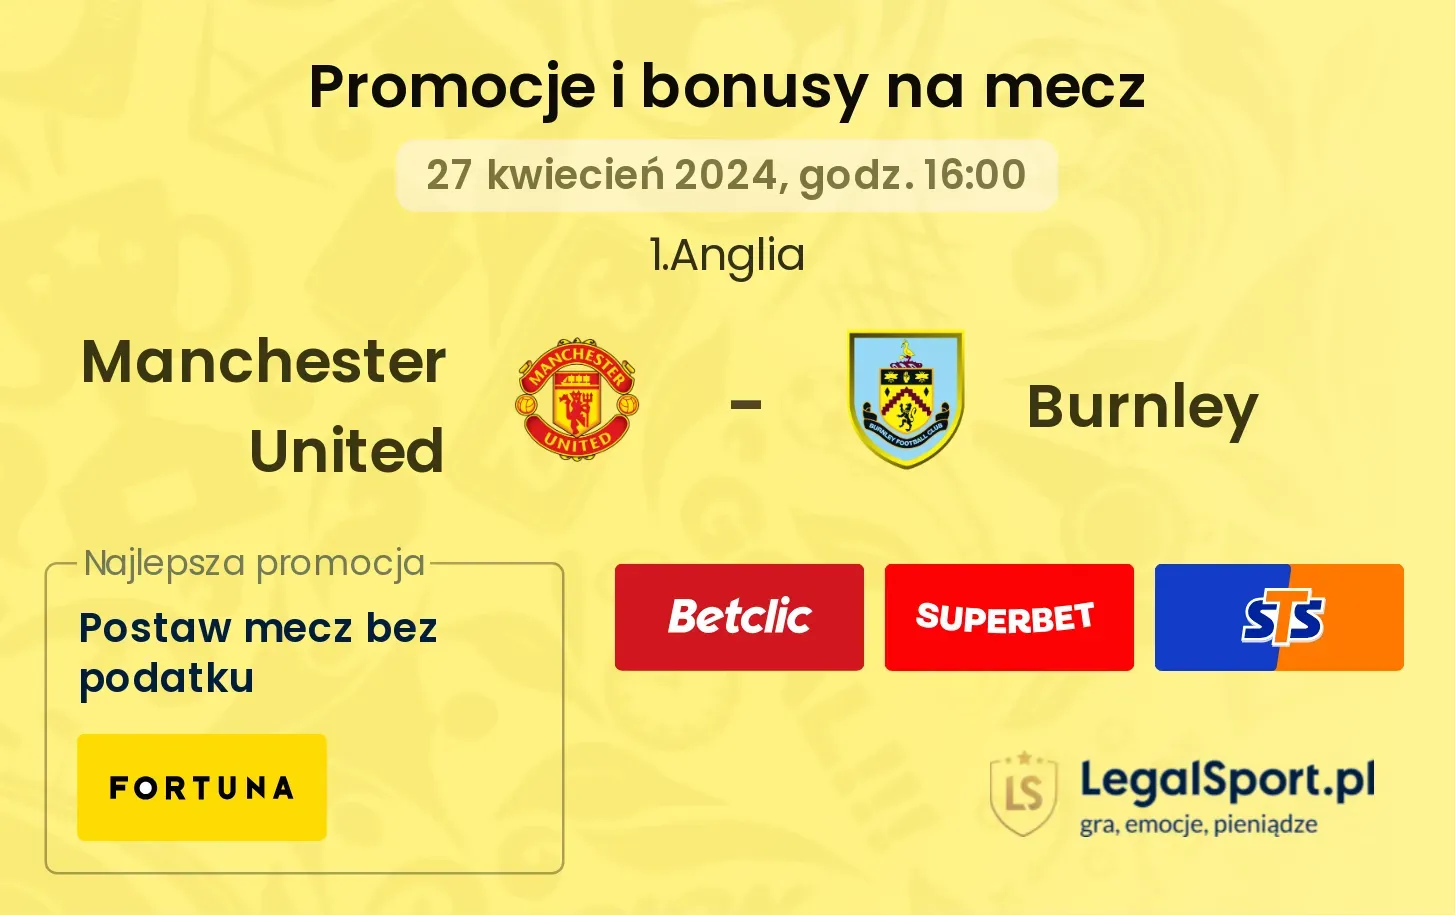 Manchester United - Burnley promocje bonusy na mecz